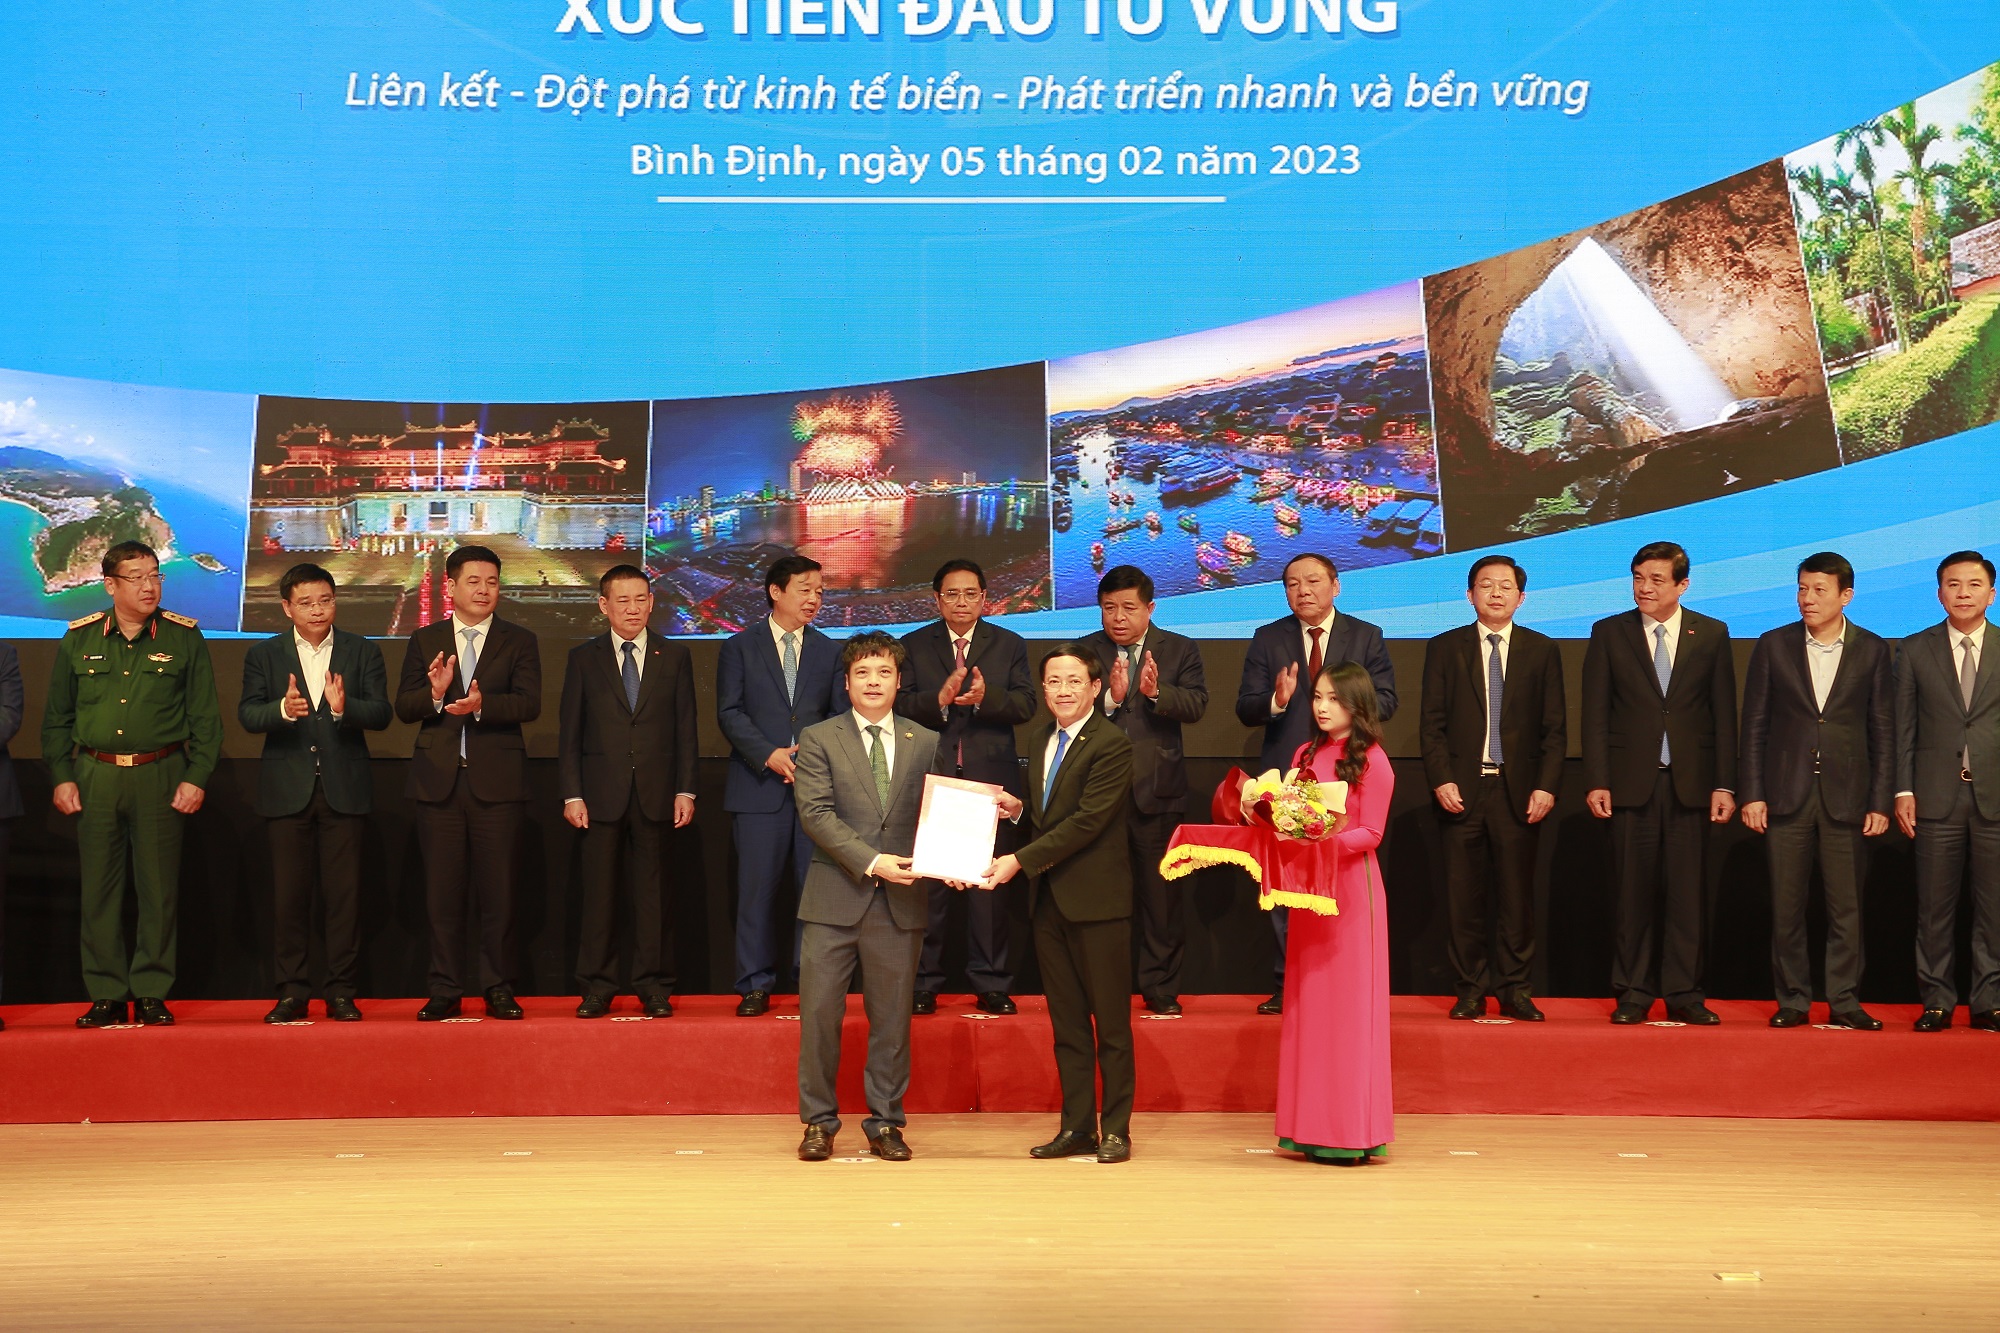 Ông Nguyễn Văn Khoa- Tổng Giám đốc Tập đoàn FPT (ngoài cùng bên trái) nhận giấy phép từ Chủ tịch UBND tỉnh Bình Định Phạm Anh Tuấn